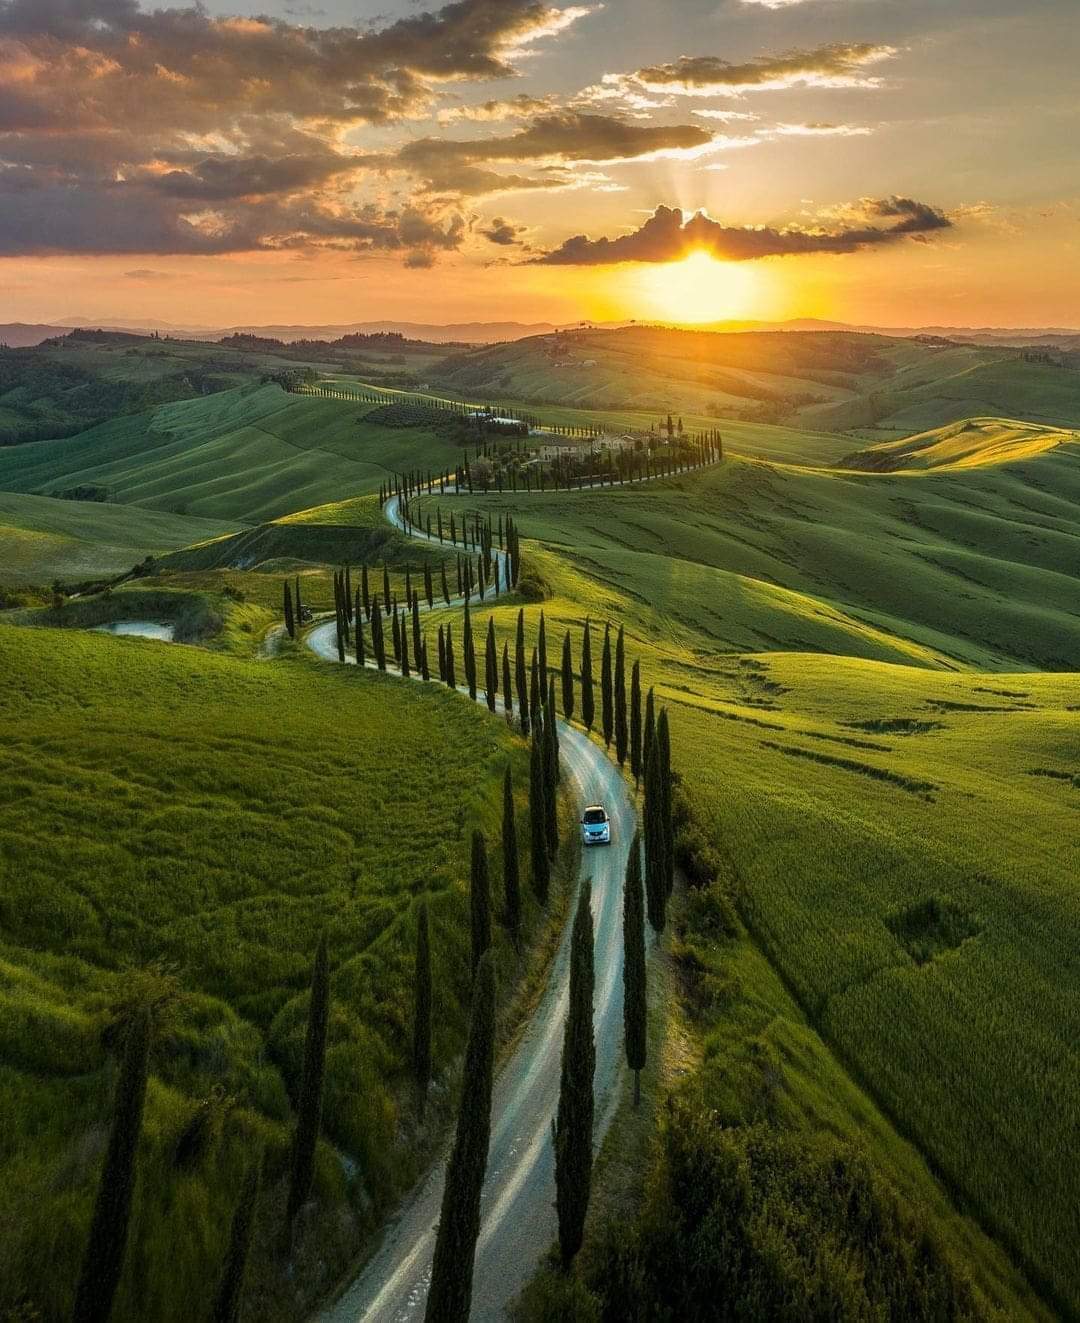 Tuscany, Italy.